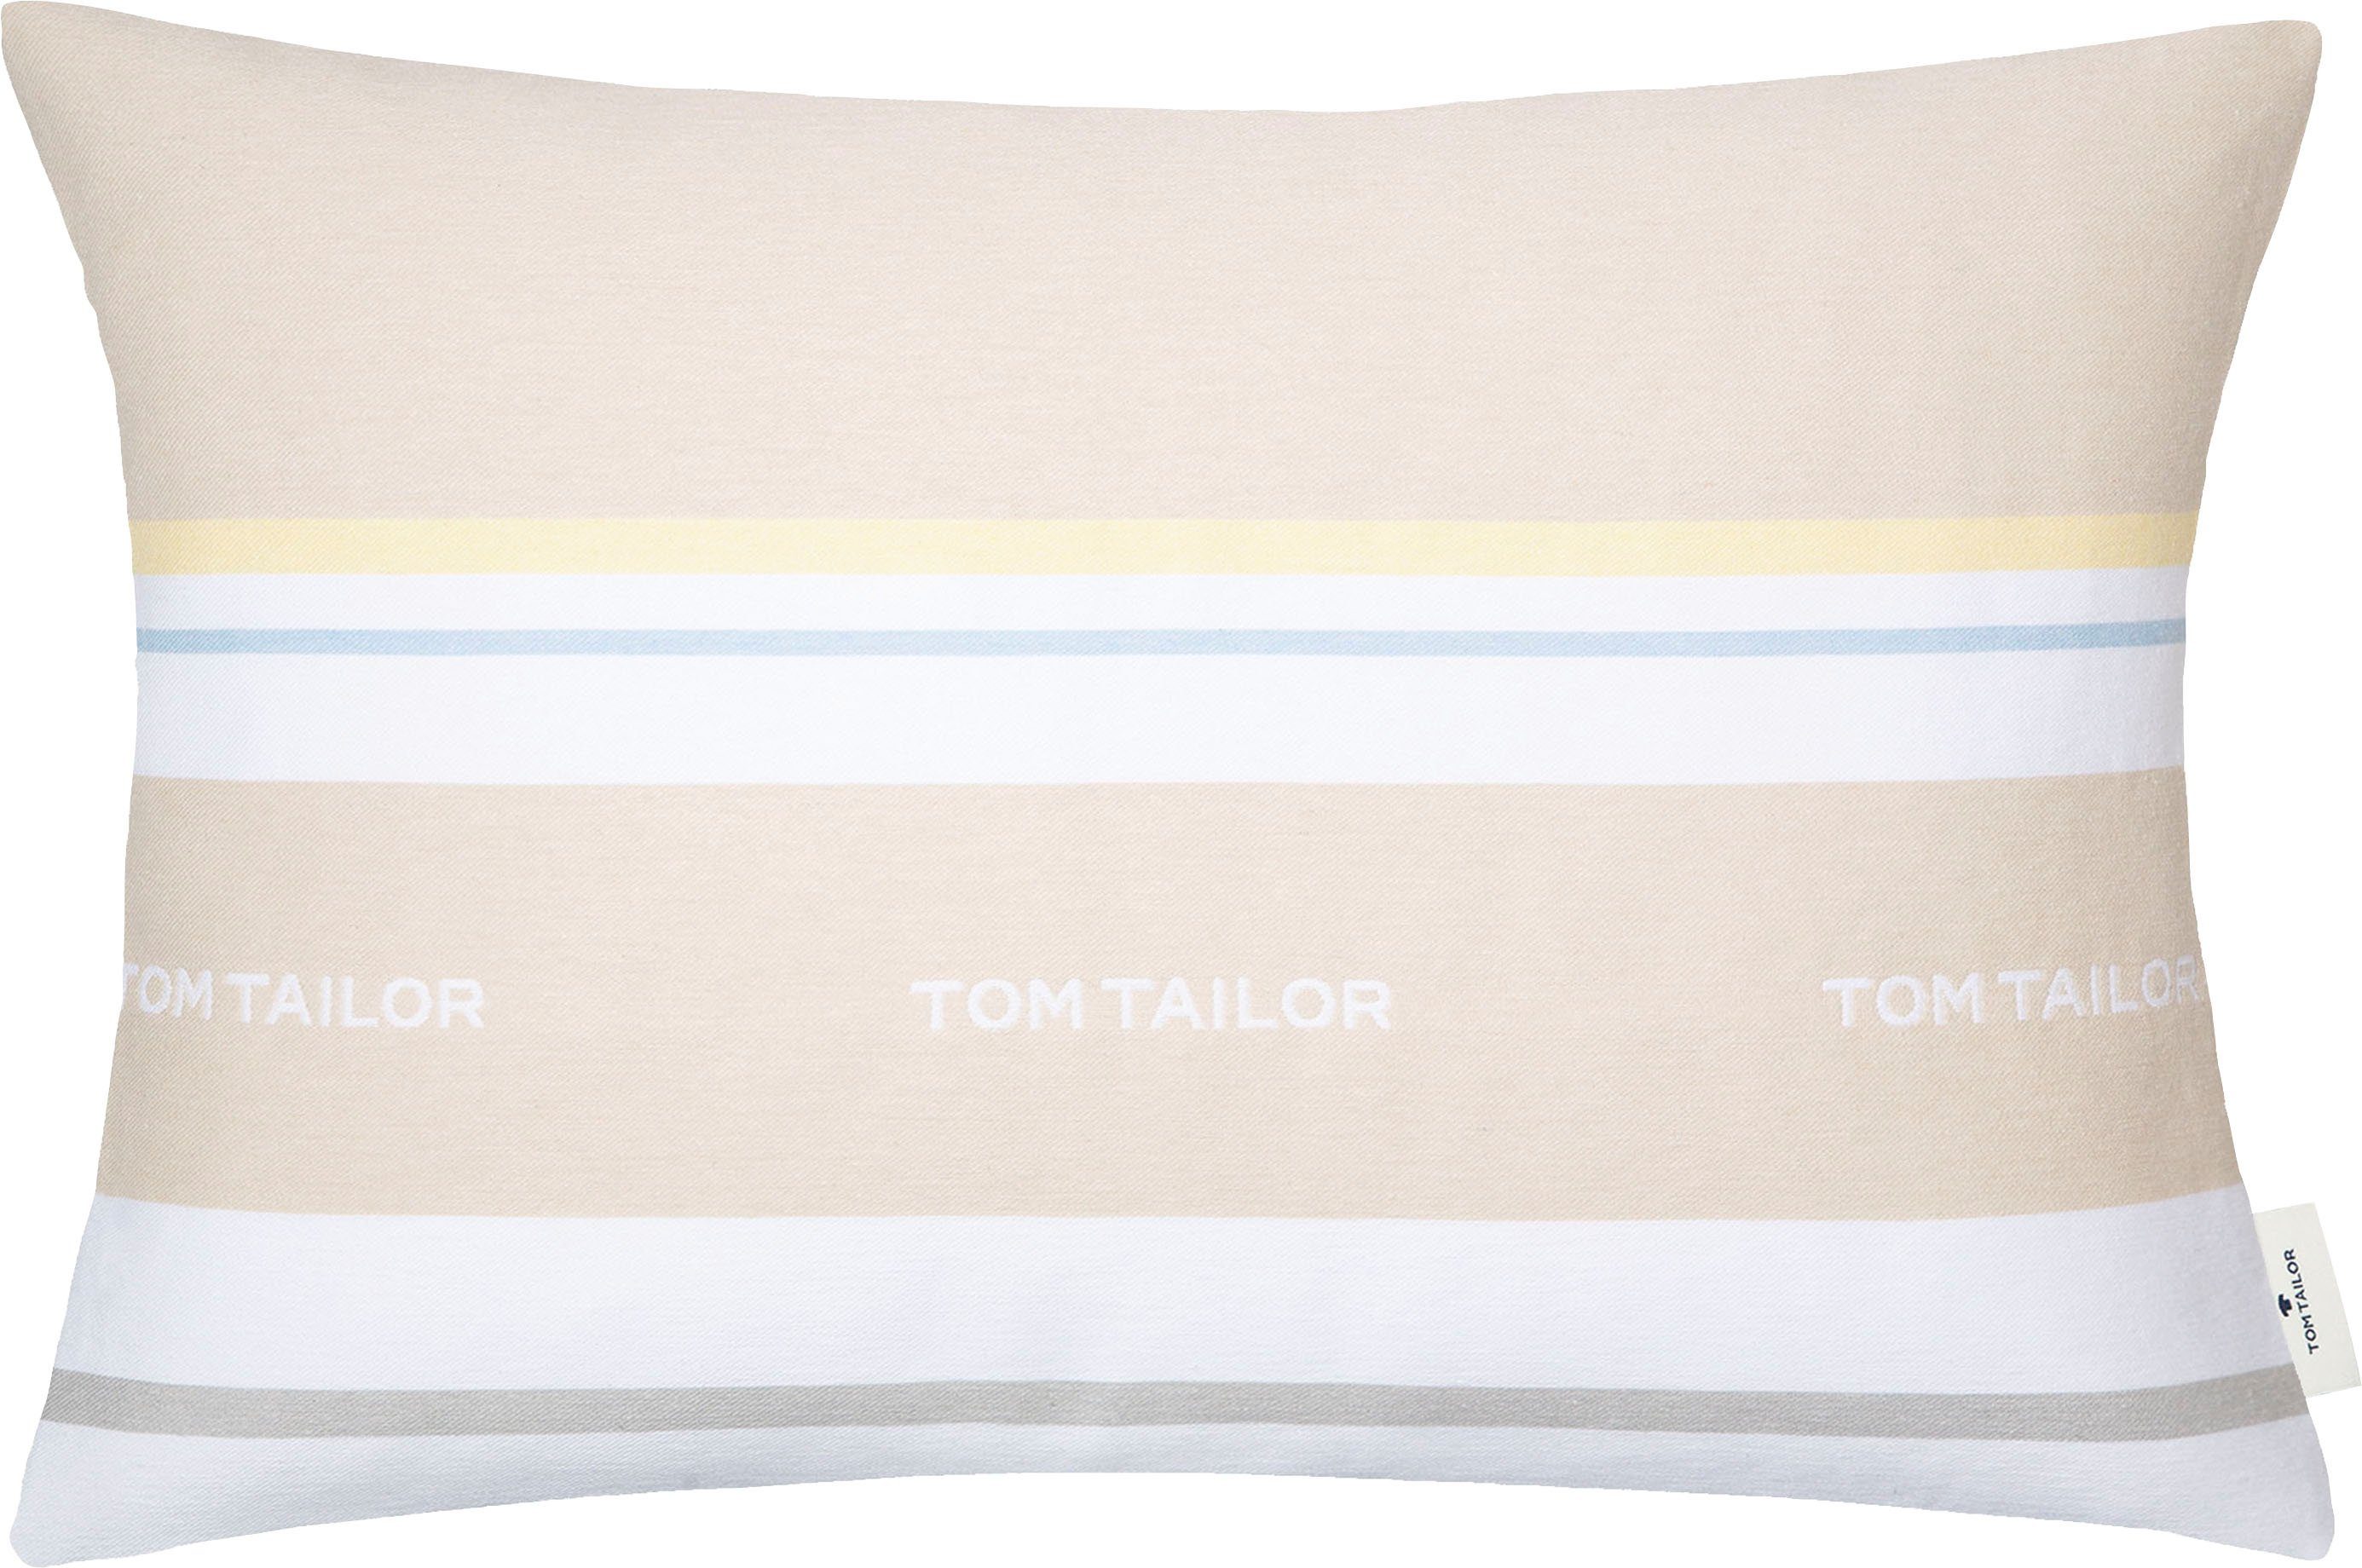 TOM TAILOR HOME Dekokissen Logo, mit eingewebtem Markenlogo, Kissenhülle ohne Füllung, 1 Stück beige/natur